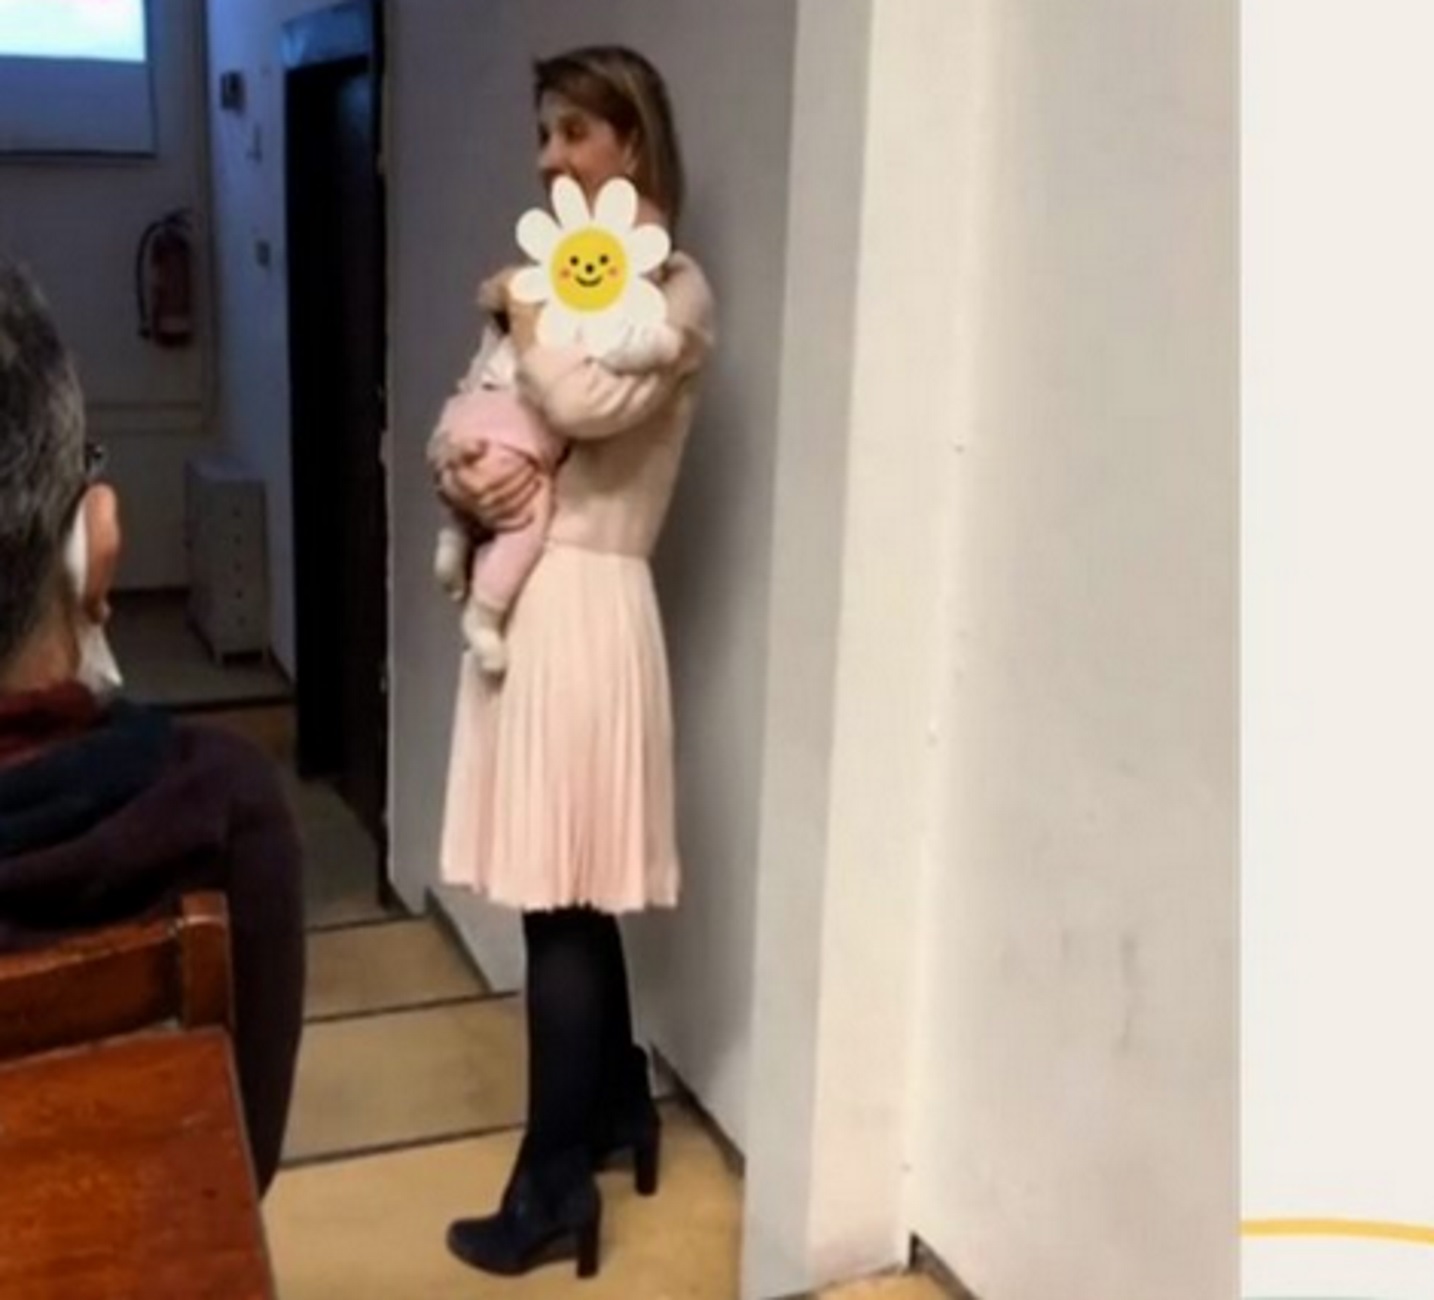 Θεσσαλονίκη: Λέκτορας του ΑΠΘ έκανε μάθημα με το μωρό φοιτήτριας στην αγκαλιά της – Δείτε τις εικόνες